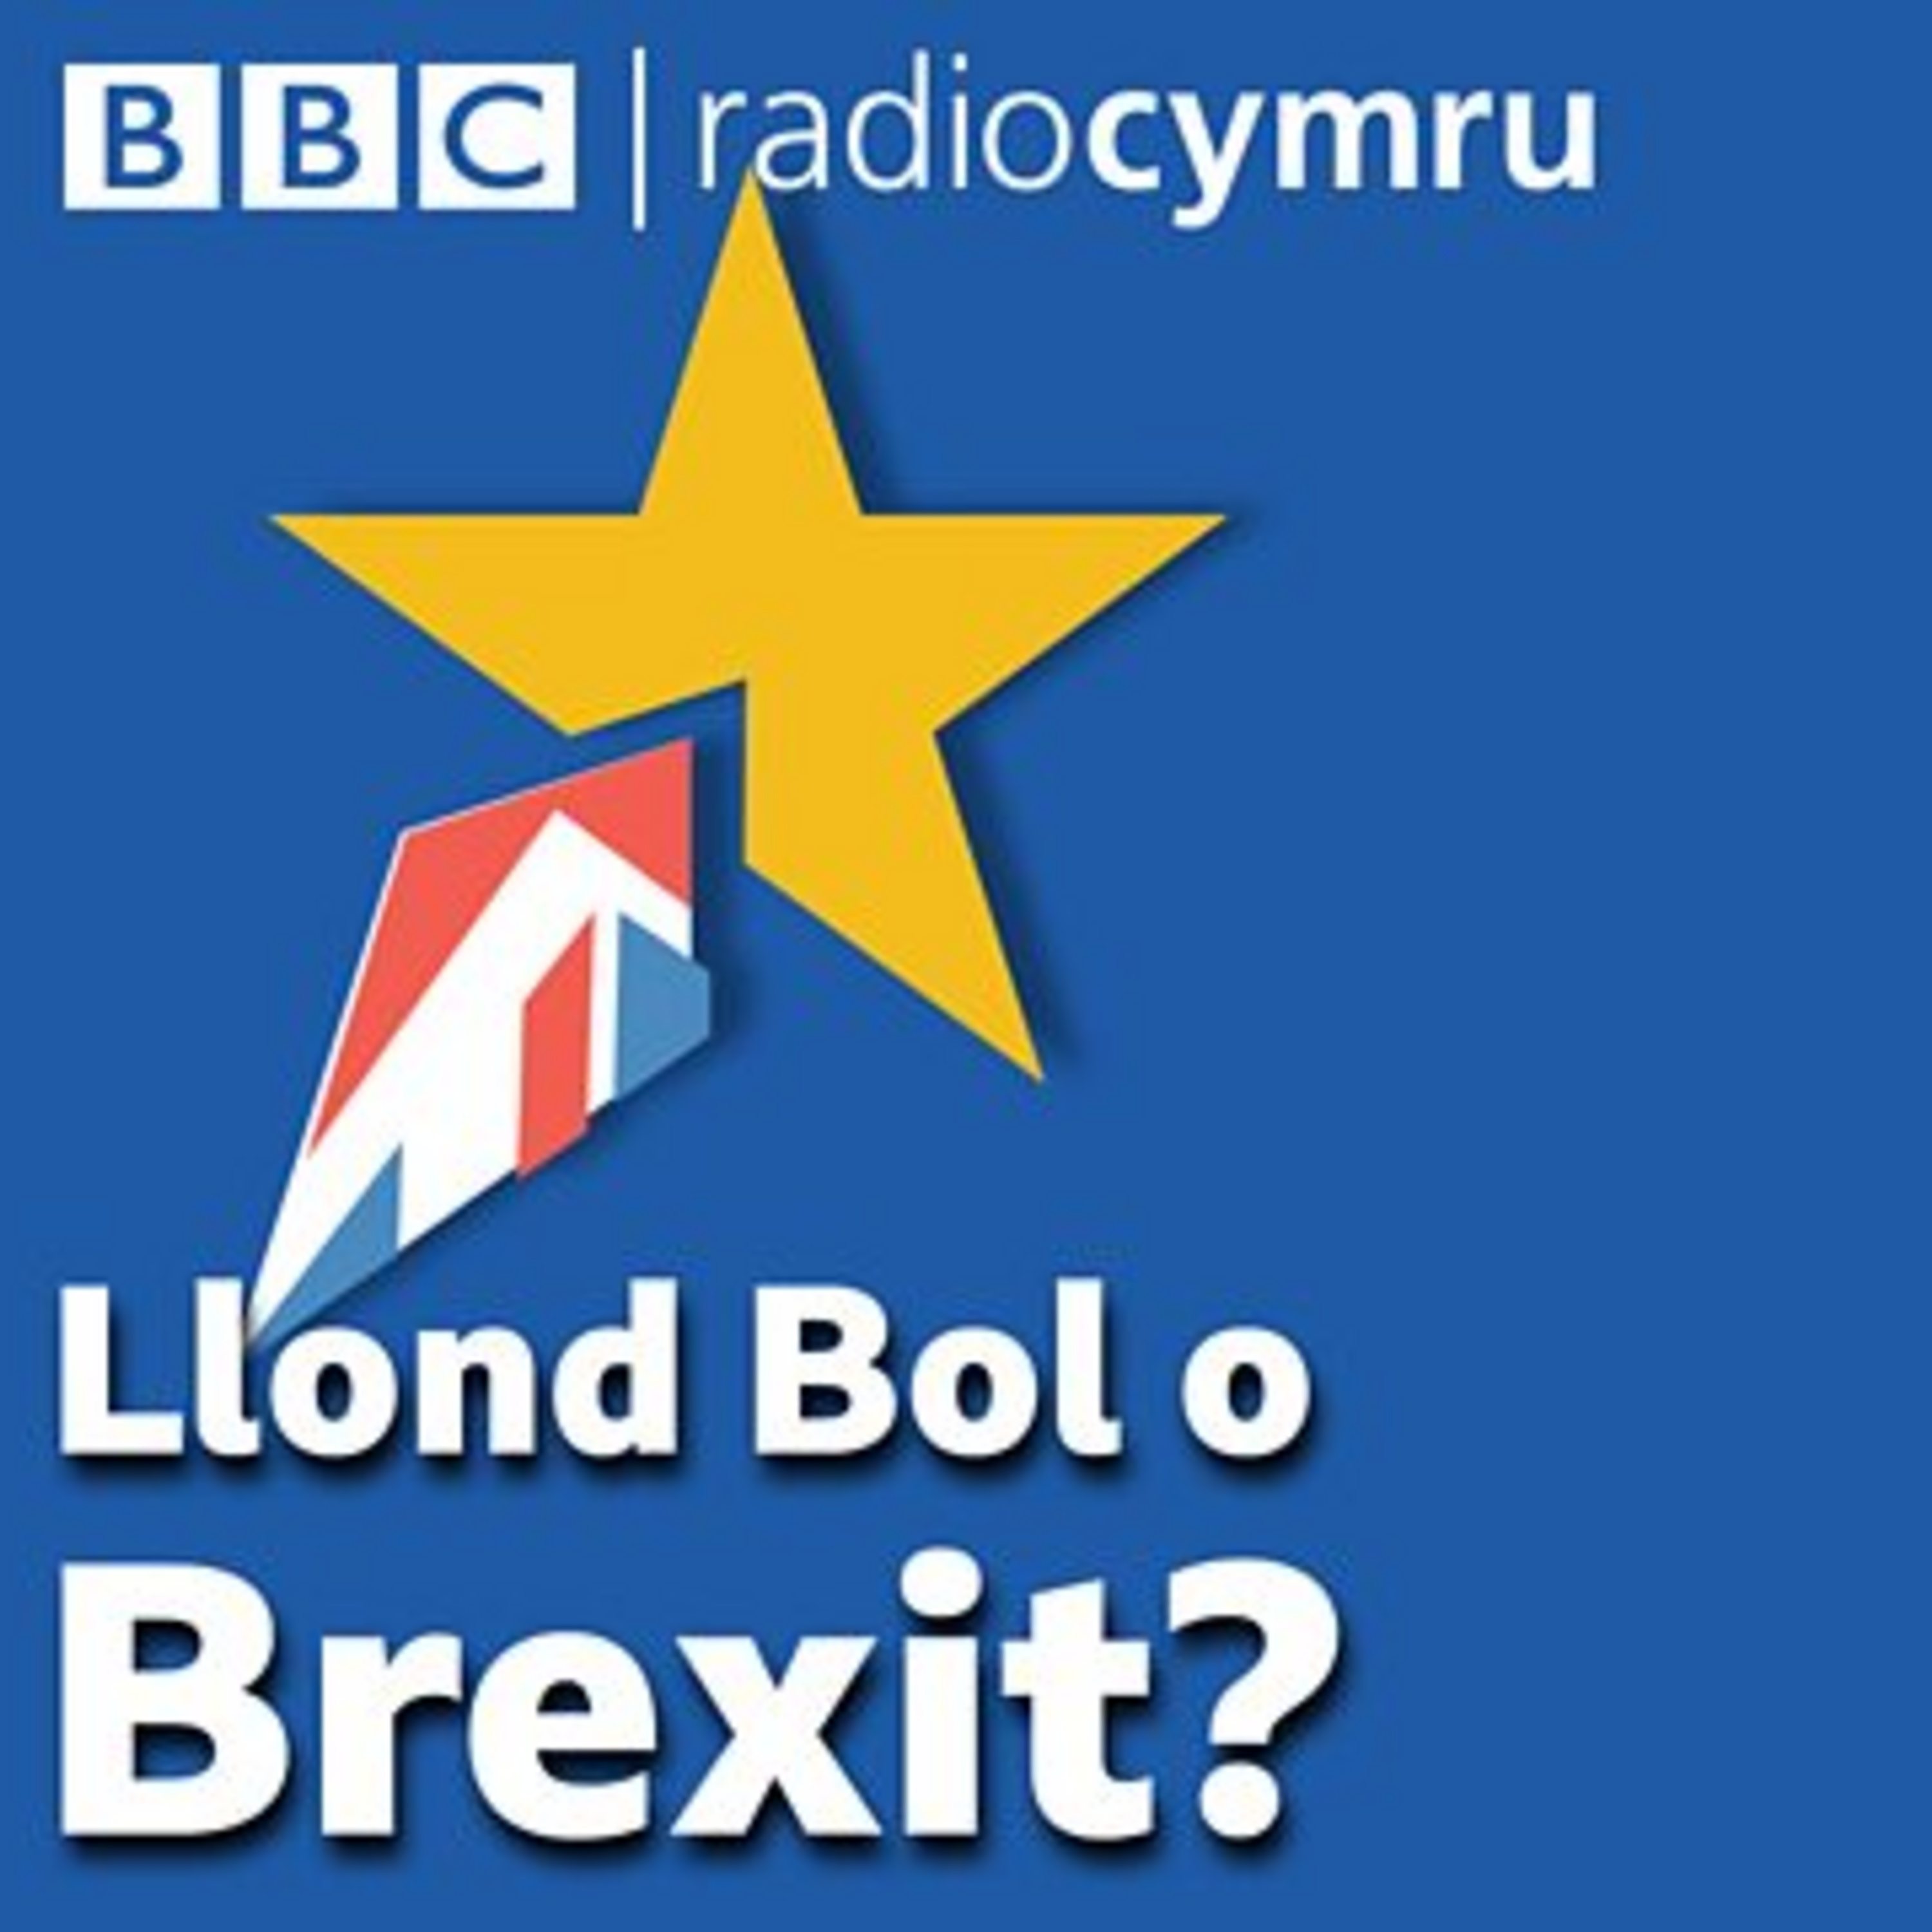 Llond Bol o Brexit - Barod am etholiad?